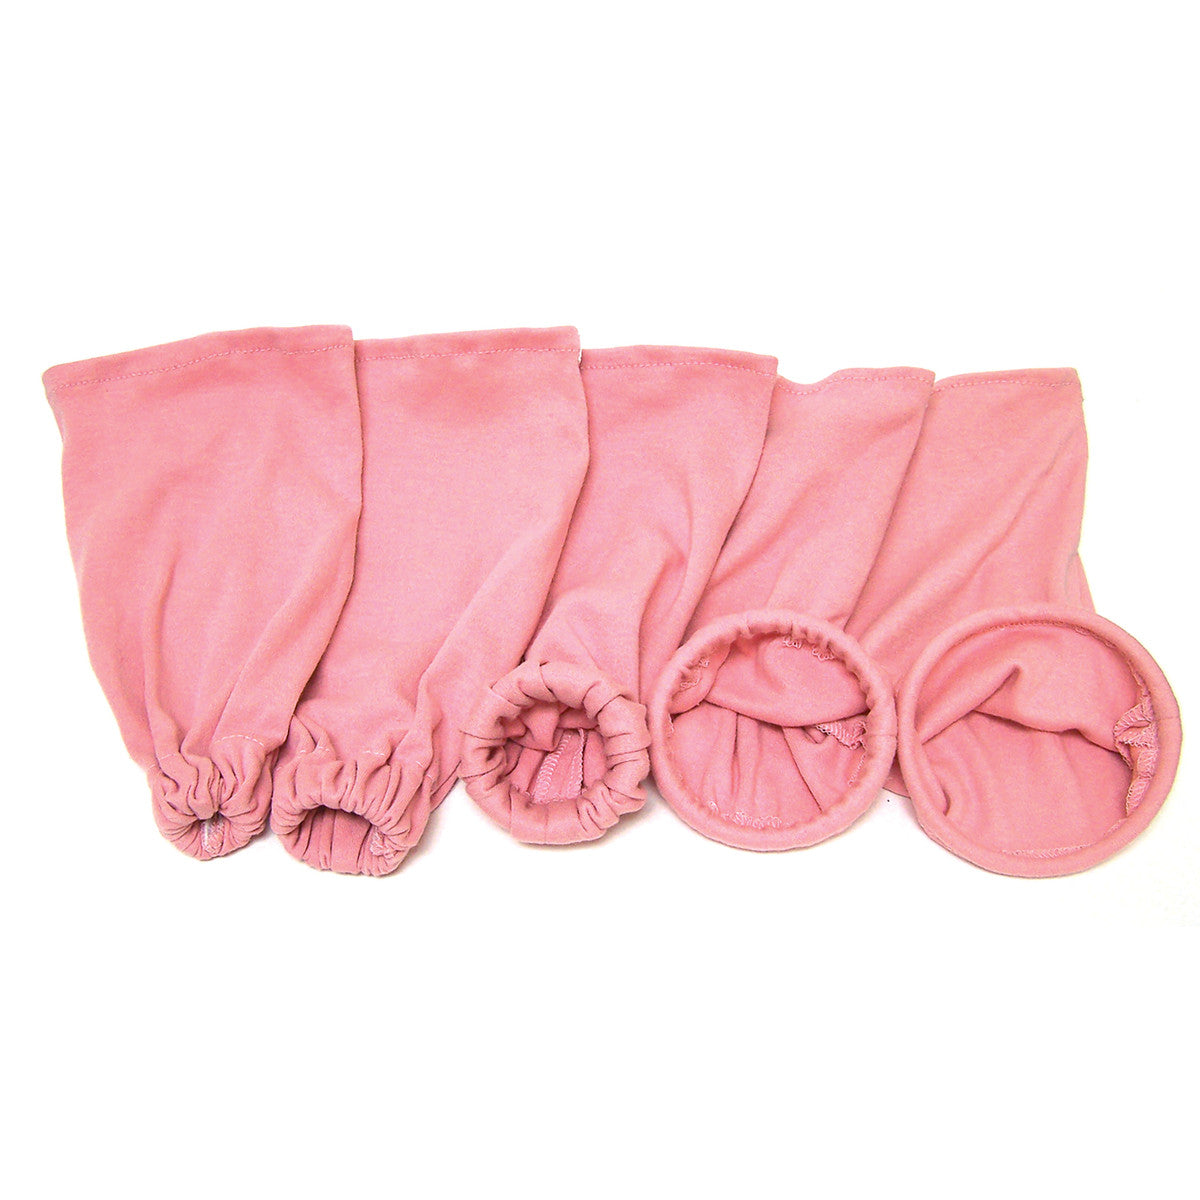 CLEARANCE Cloth Cervix Model Set